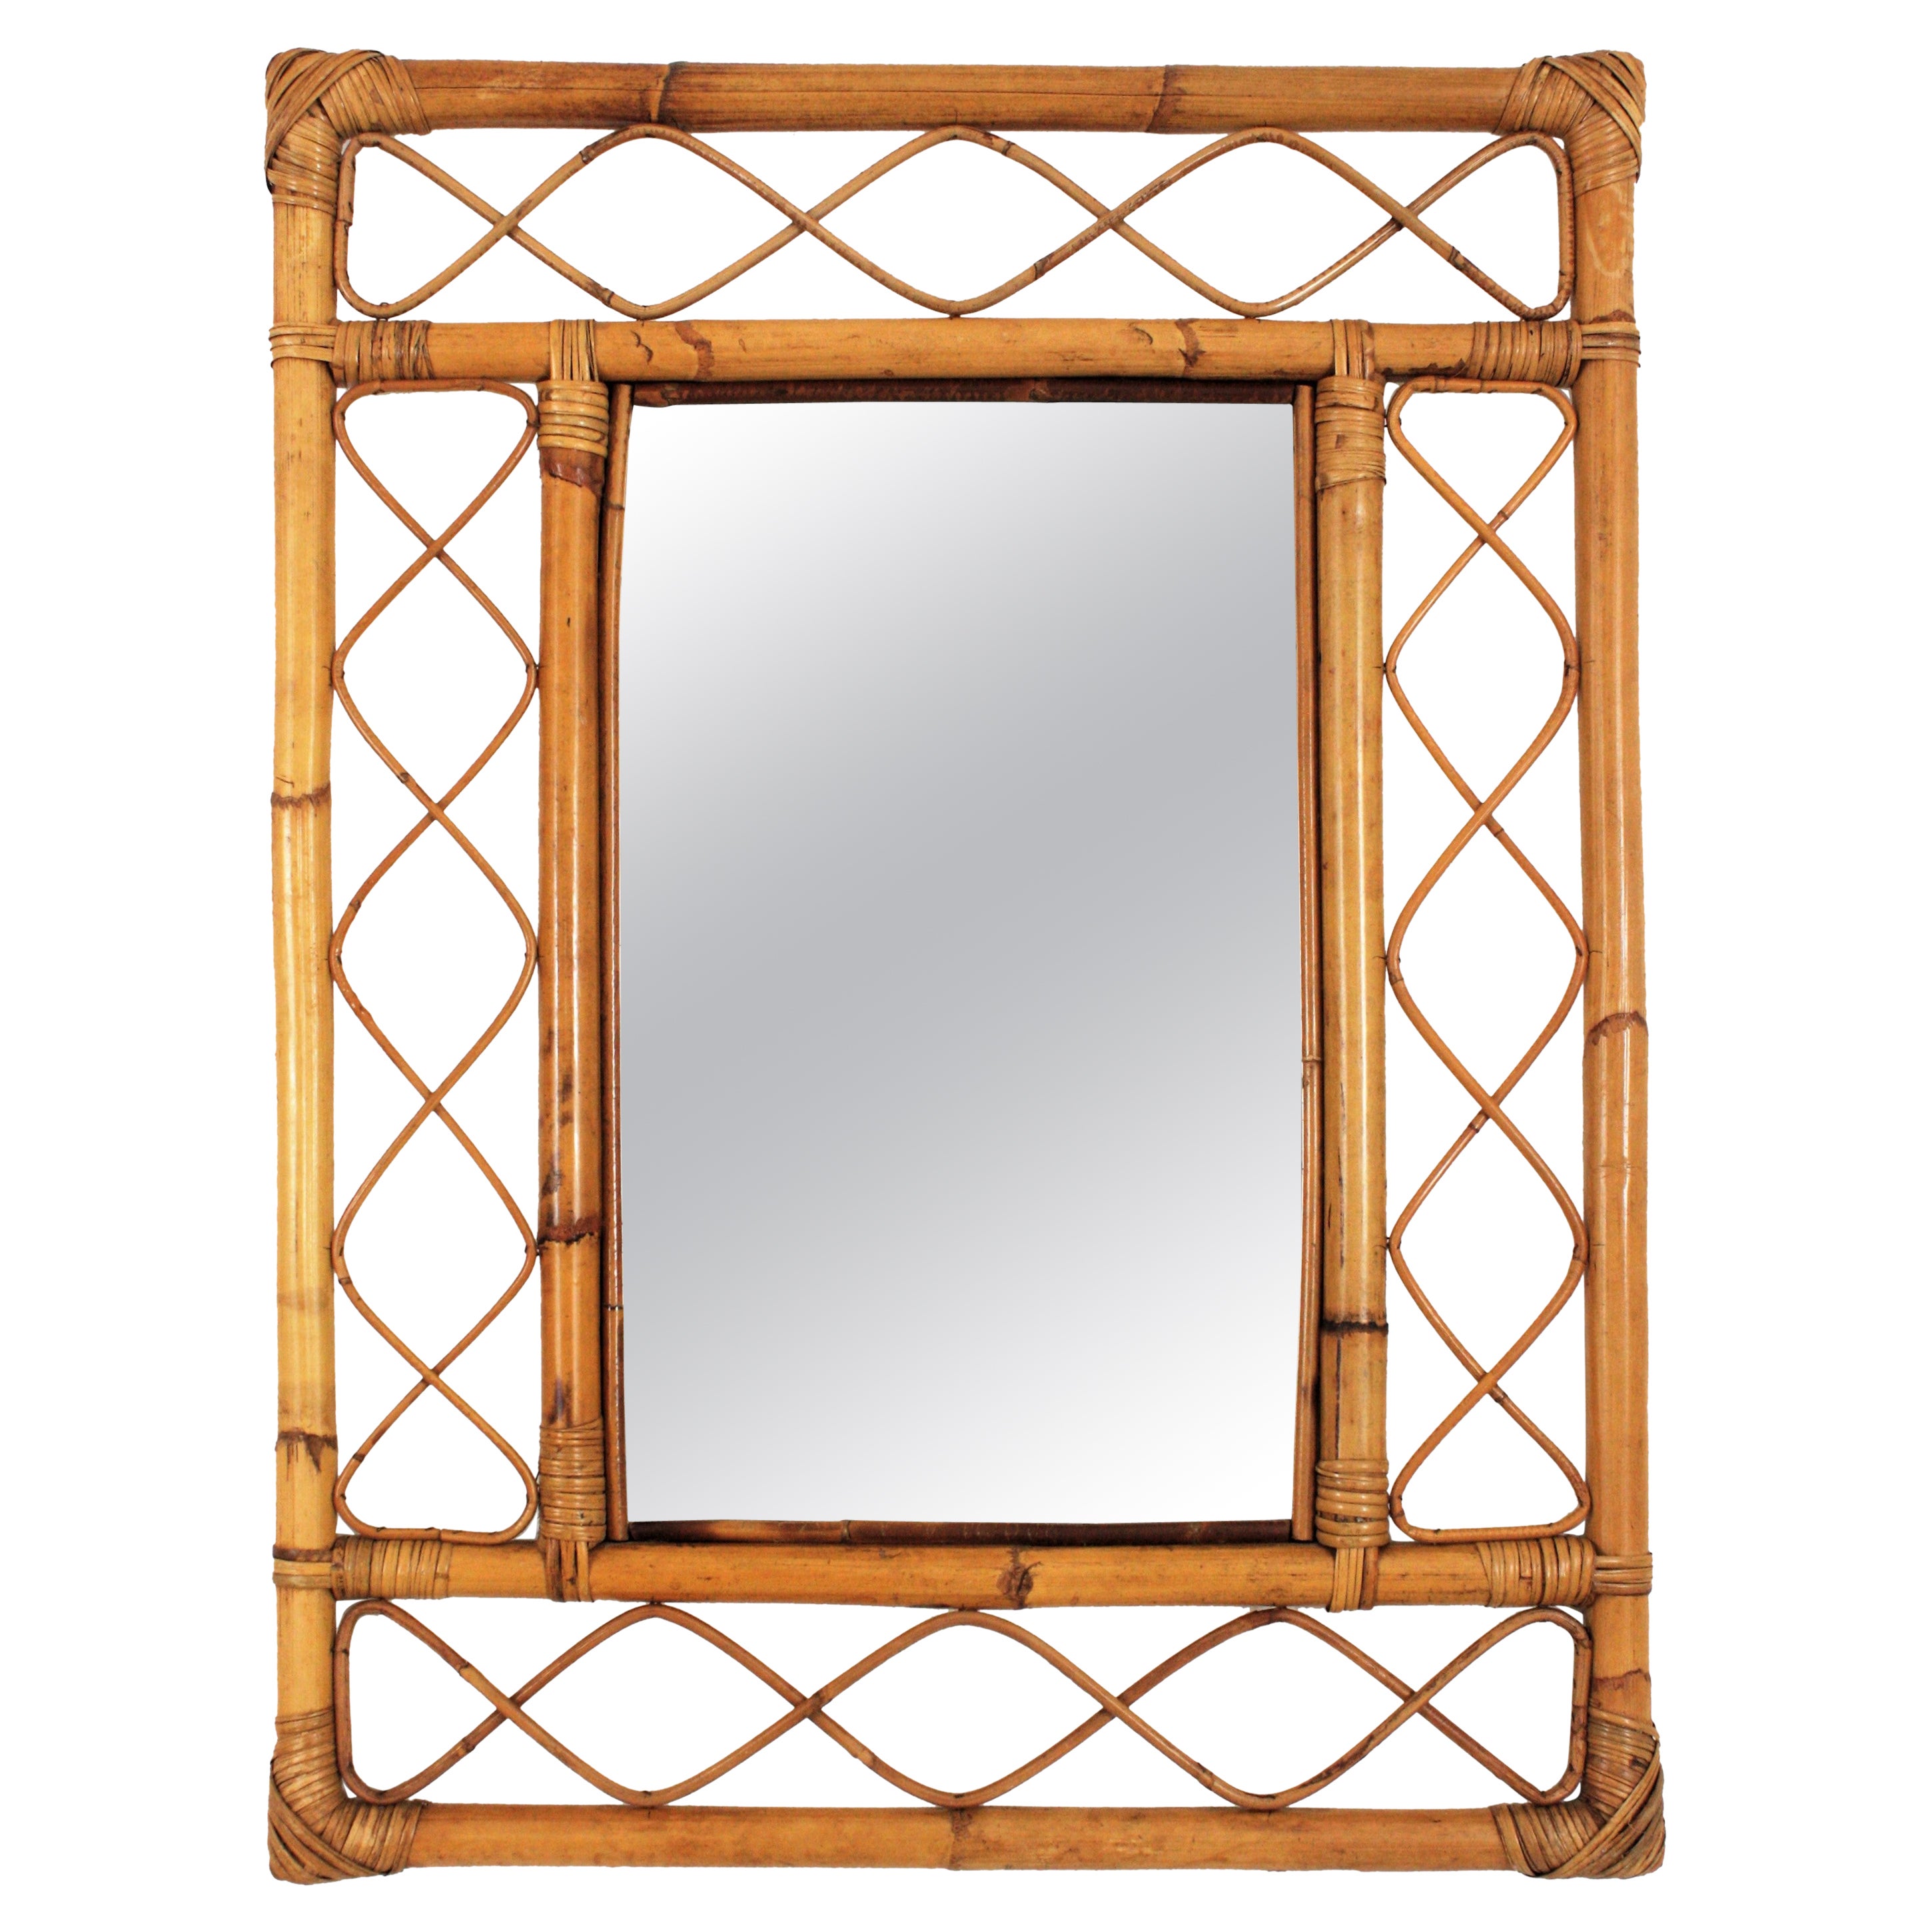 Rattan Bamboo Franco Albini Style Rectangular Mirror